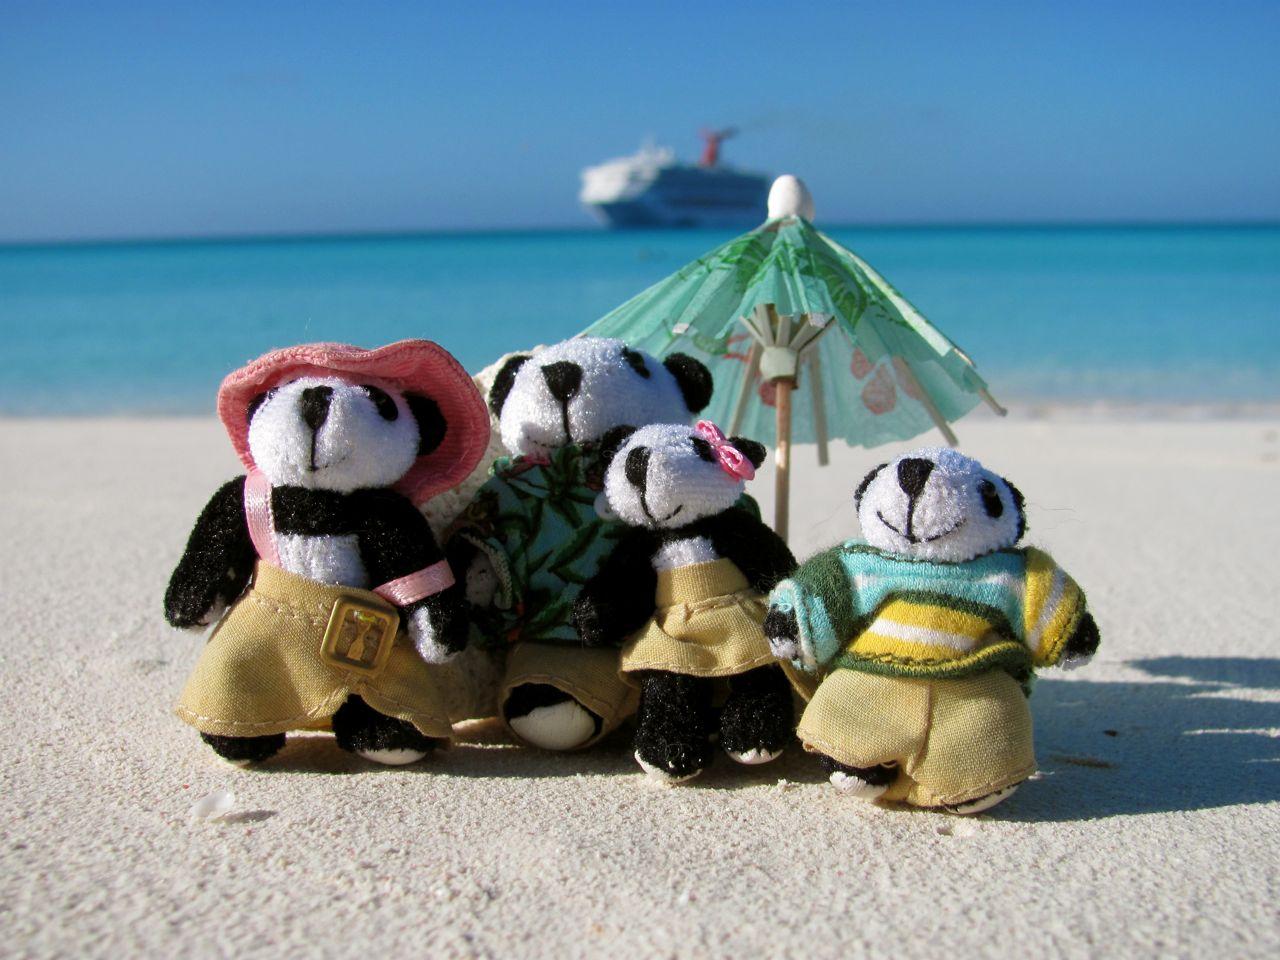 The Pandafords at Half Moon Cay